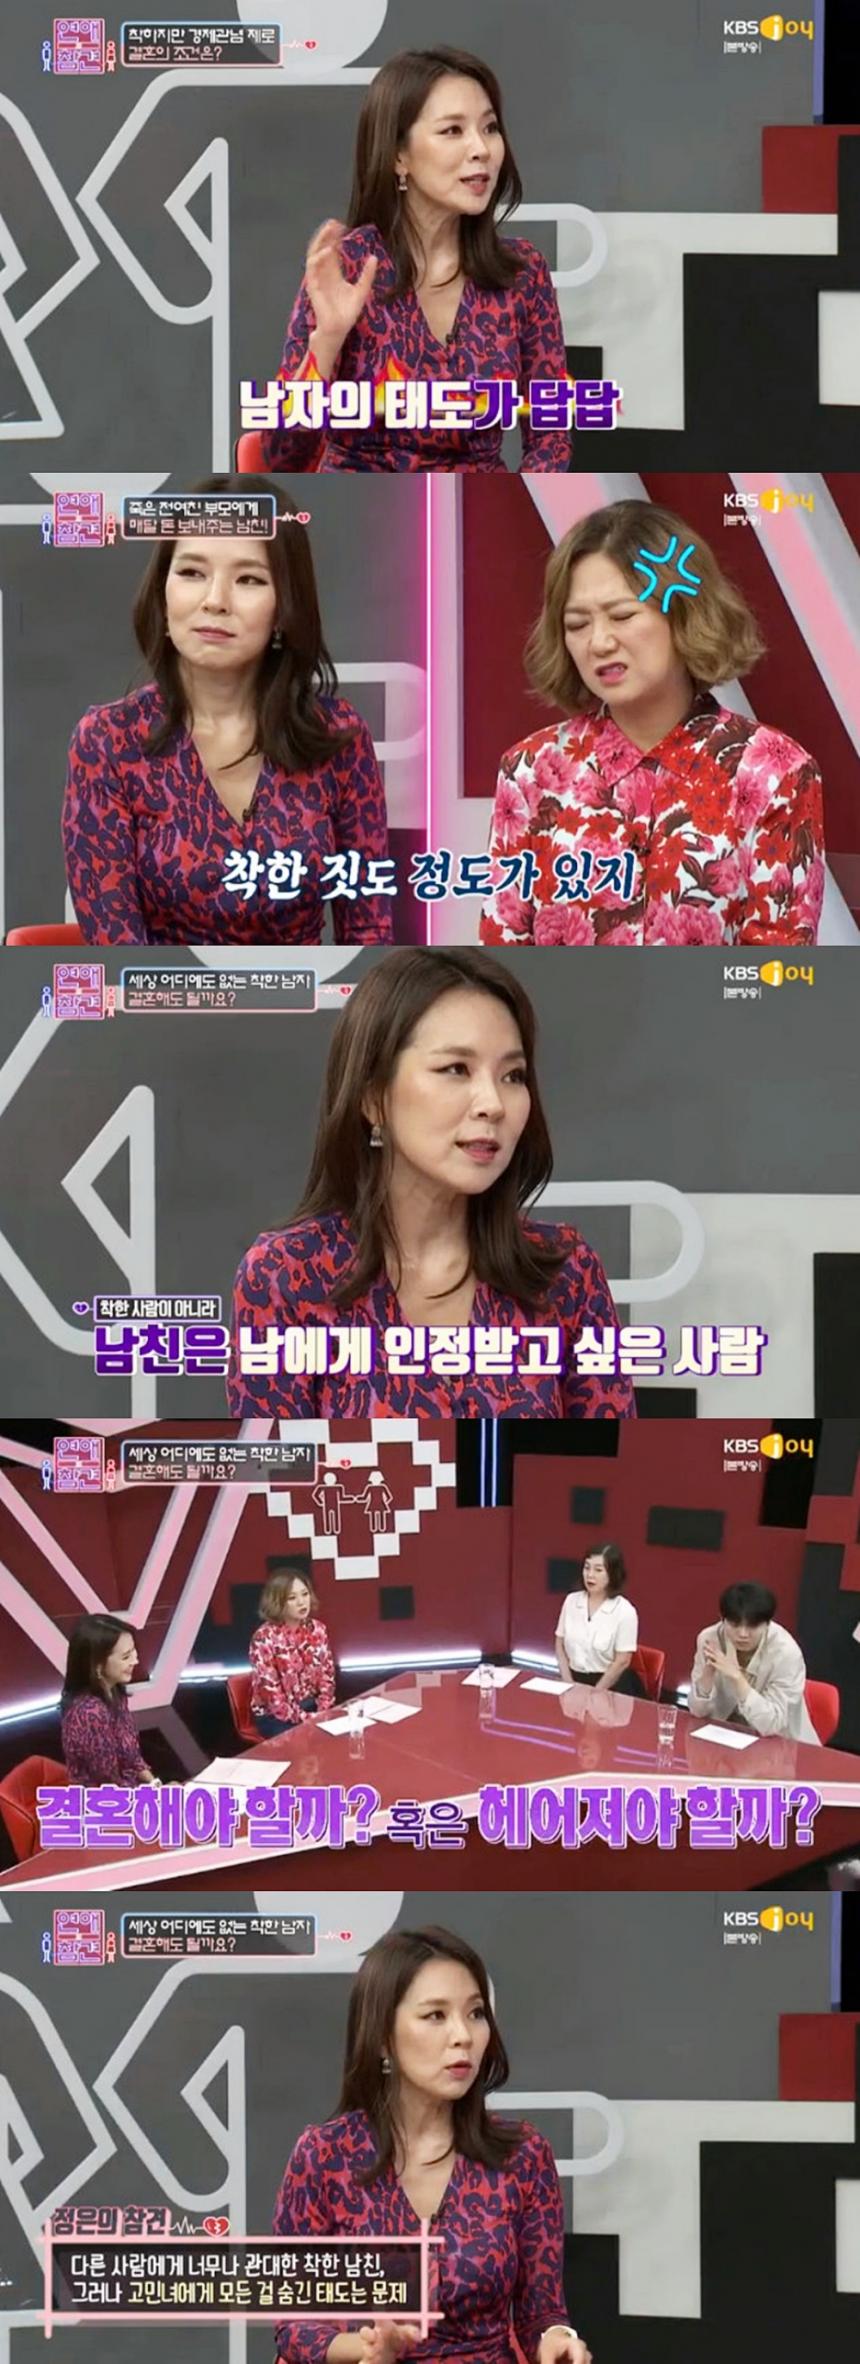 KBS 조이 ‘연애의 참견’ 방송 캡처